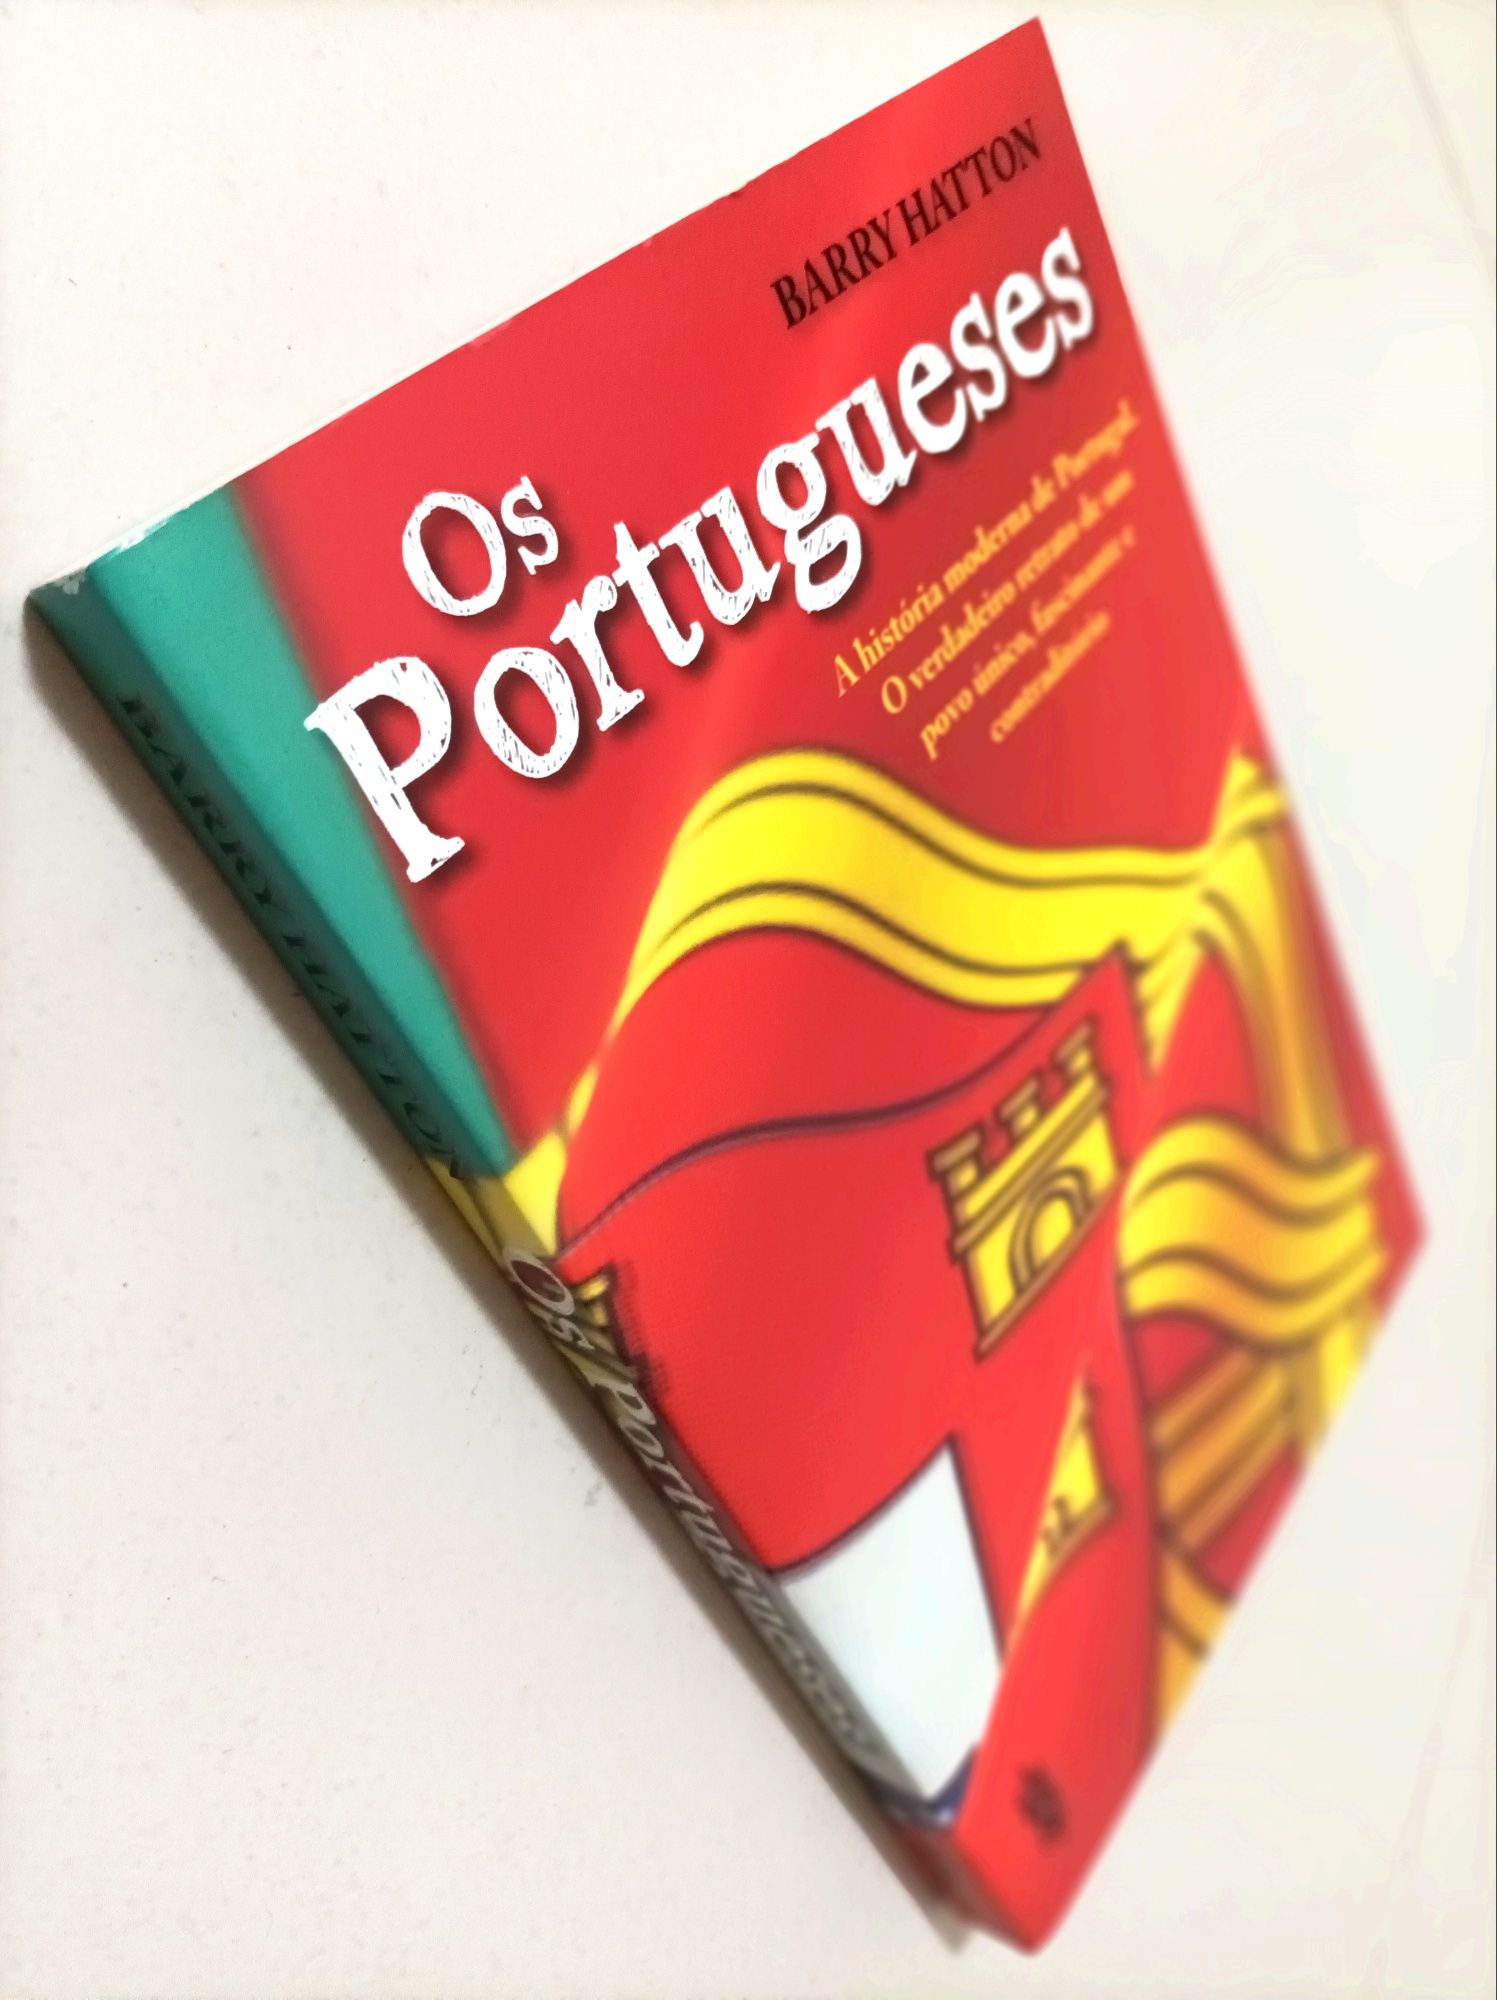 Livro: Os Portugueses de Barry Hatton